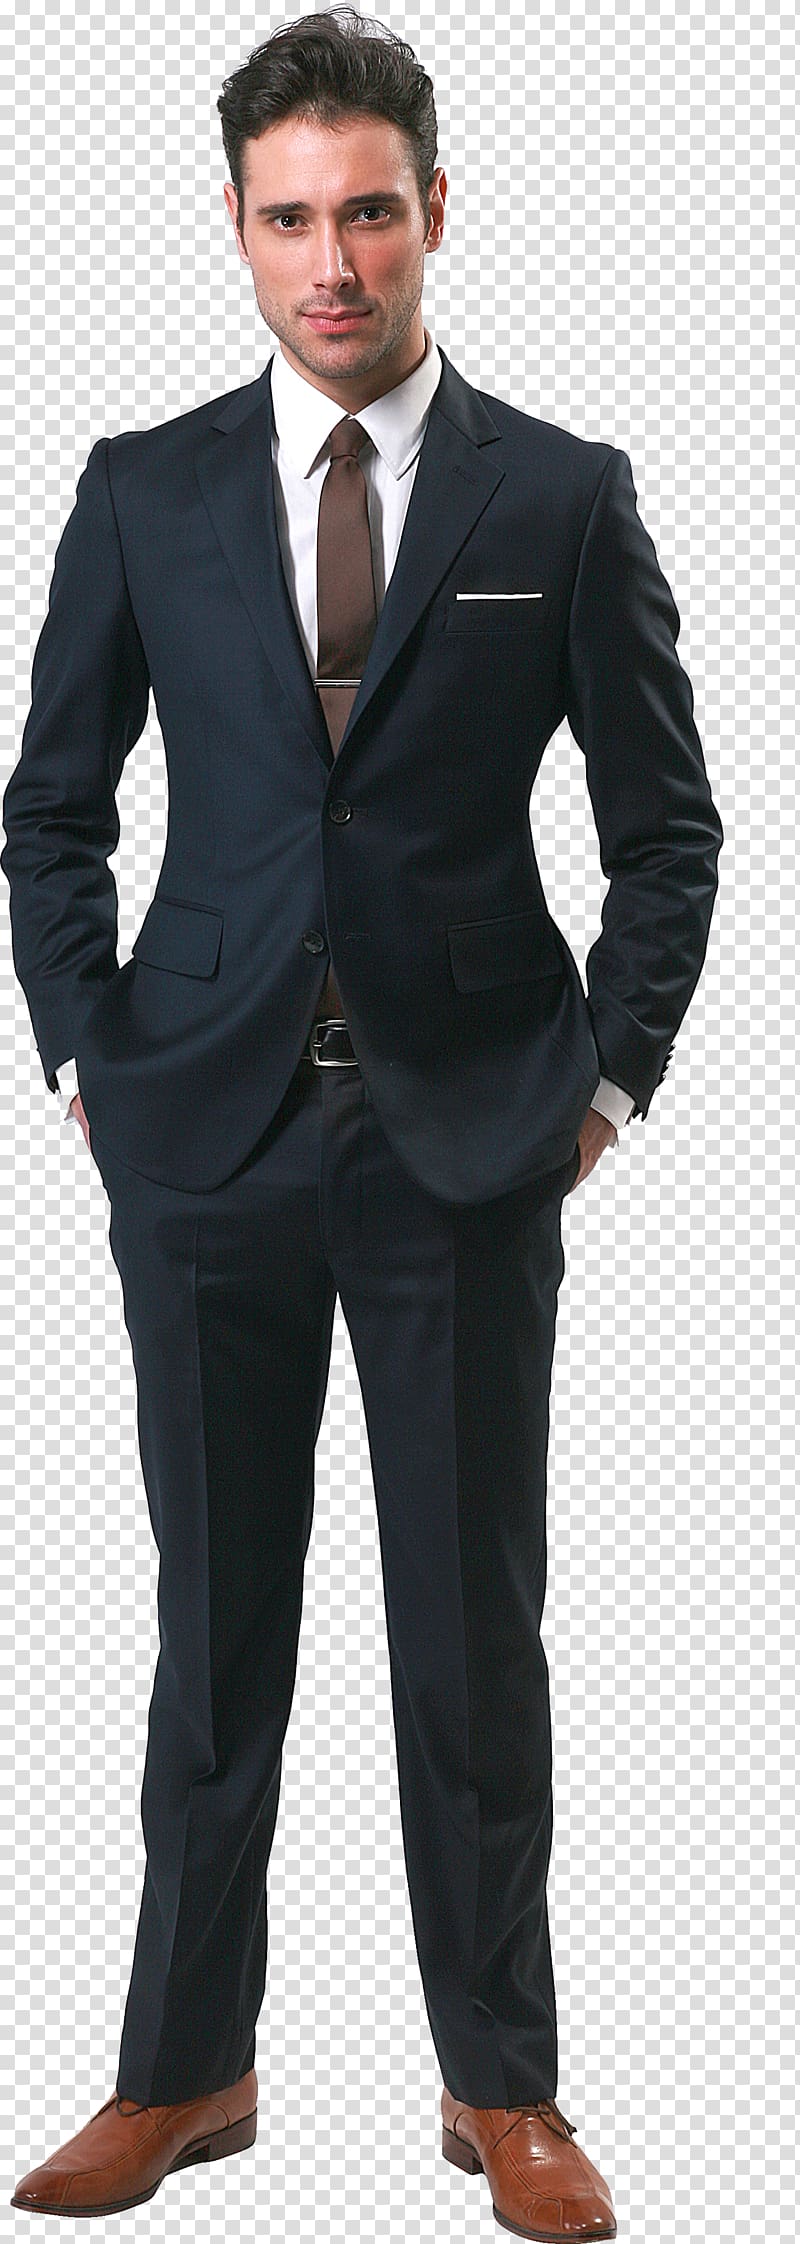 men's black suit jacket, Business , Businessman transparent background PNG clipart